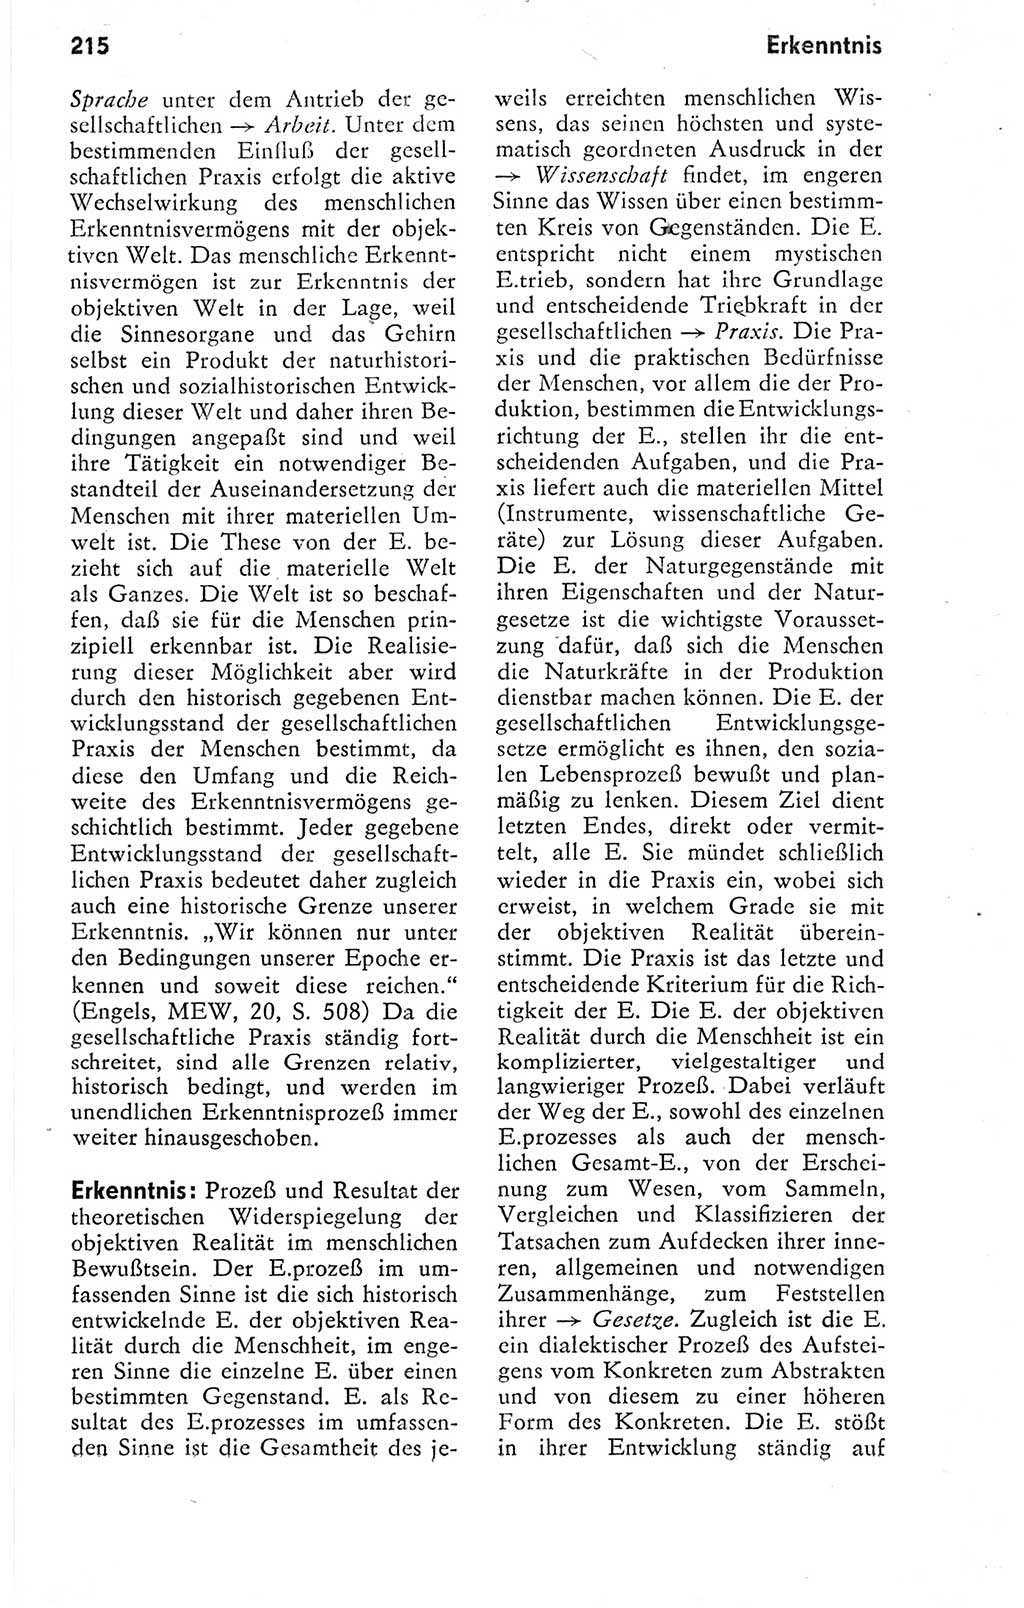 Kleines politisches Wörterbuch [Deutsche Demokratische Republik (DDR)] 1978, Seite 215 (Kl. pol. Wb. DDR 1978, S. 215)